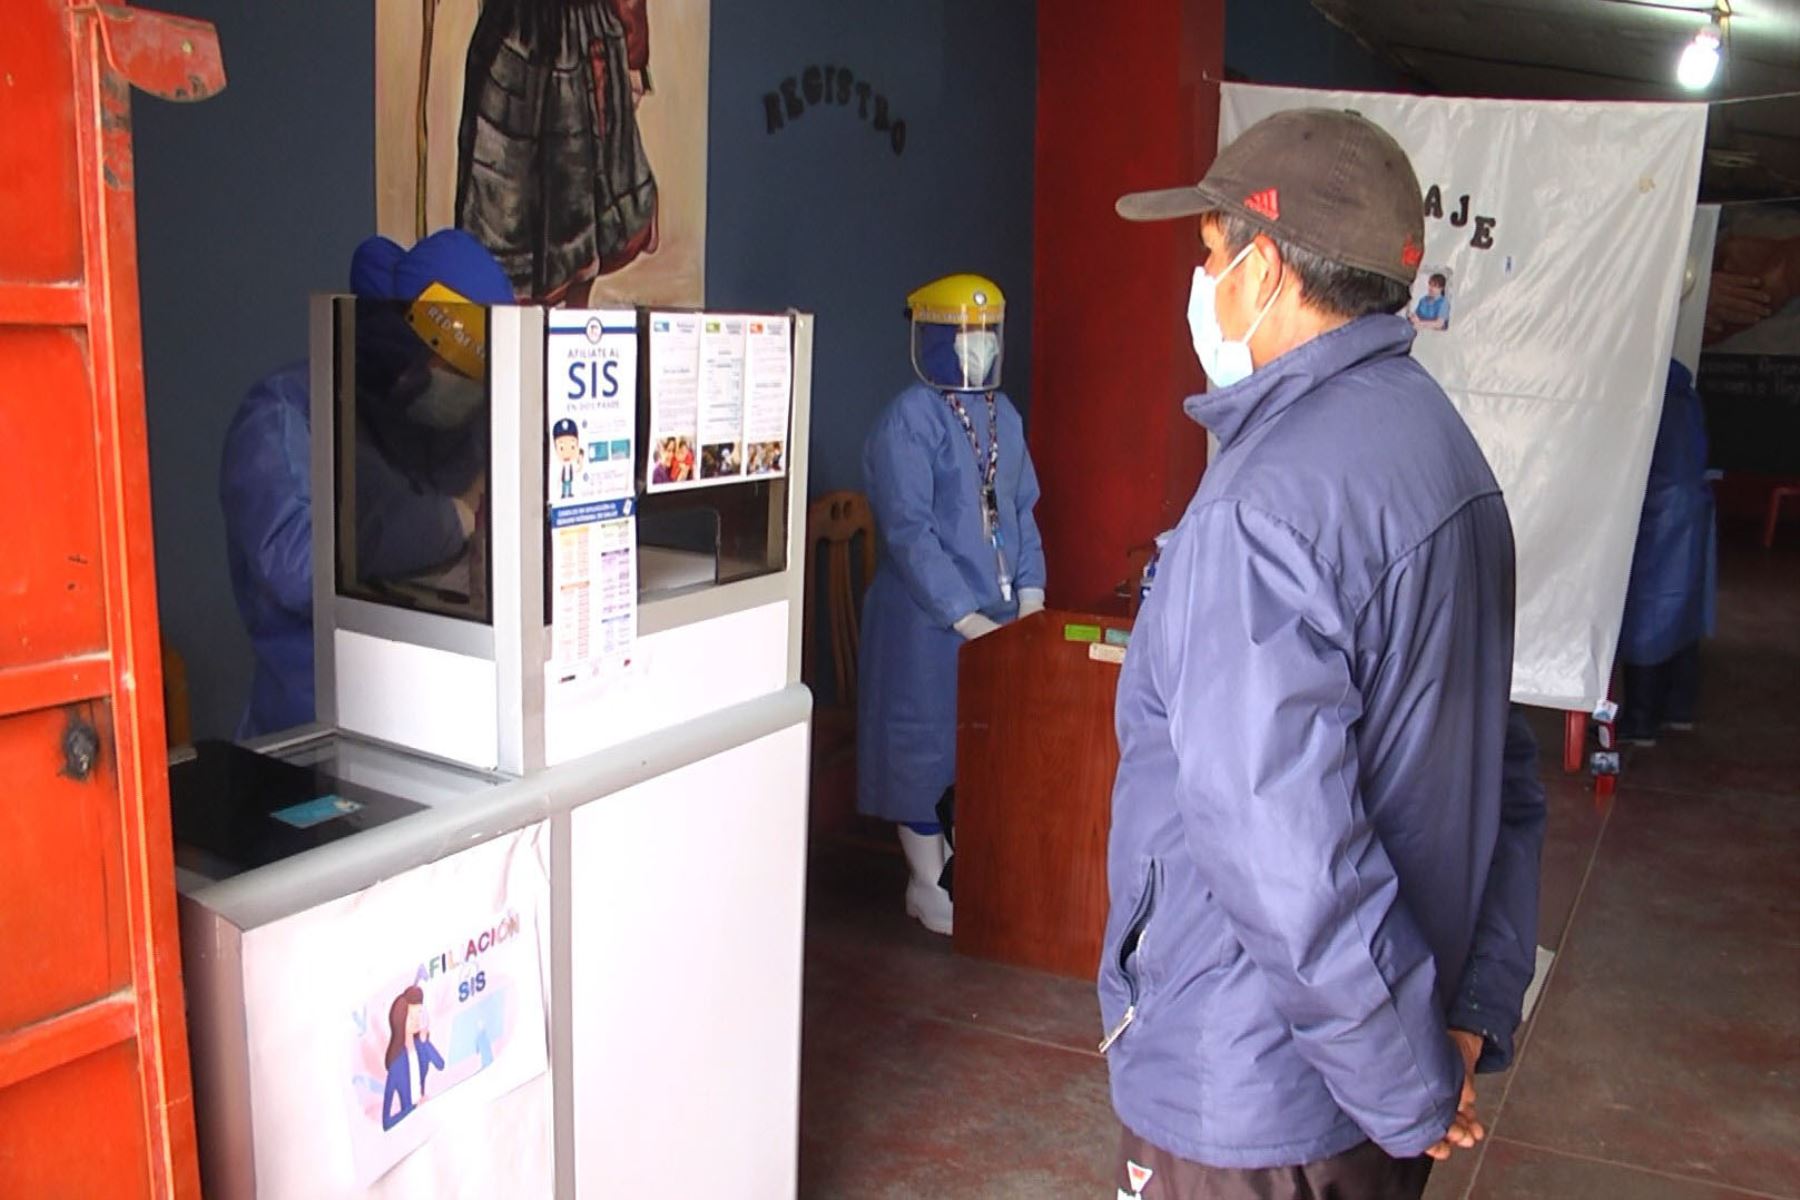 La Red de Salud Valle del Mantaro instaló nueve puntos satélite para el descarte del covid-19 en Huancayo. Foto: Cortesía Pedro Tinoco